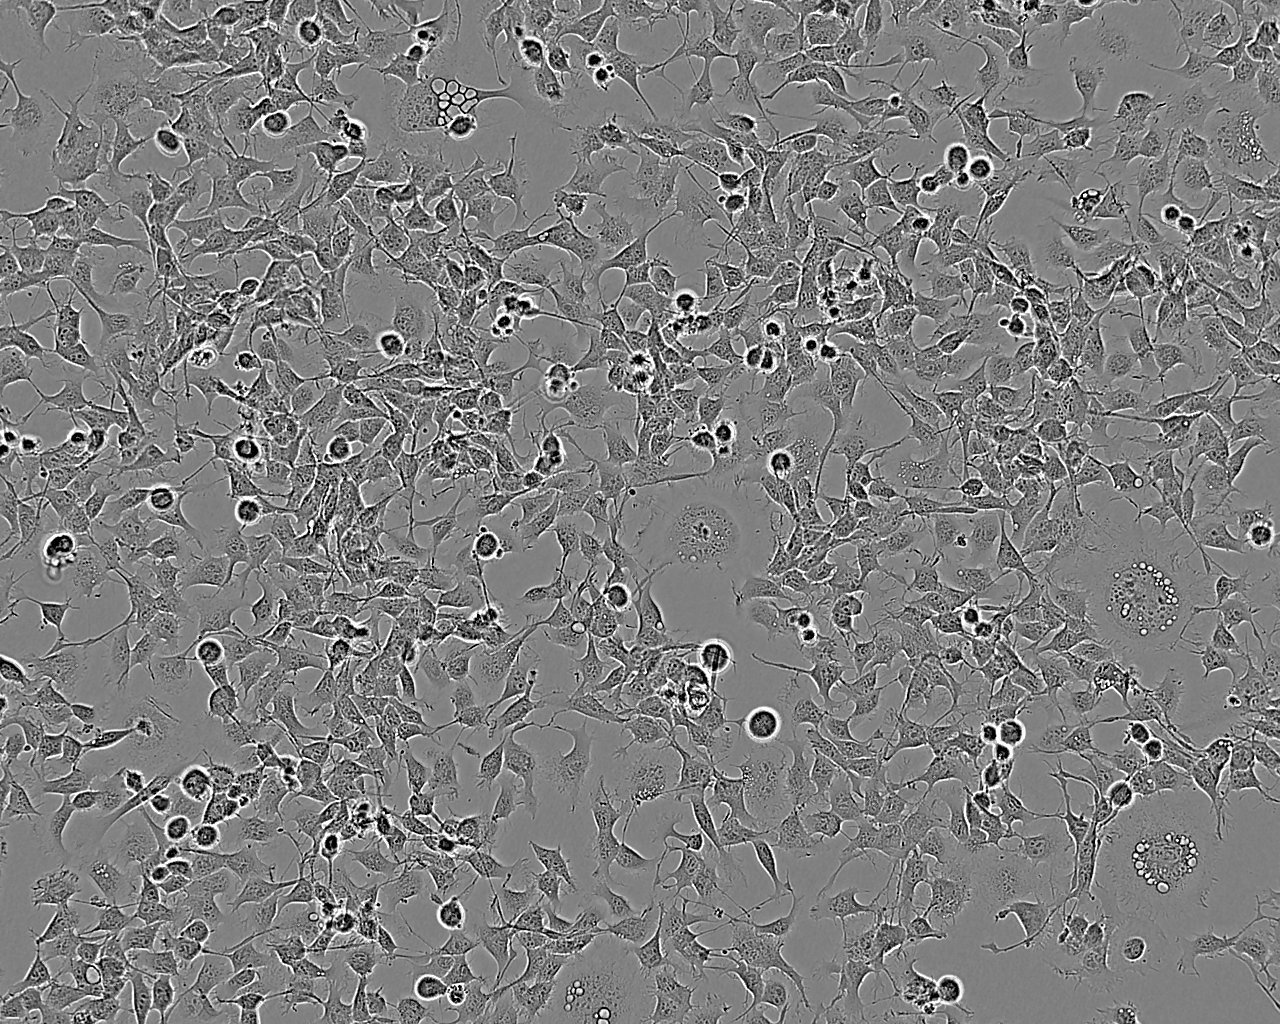 PANC-1细胞：人胰腺癌细胞系,PANC-1